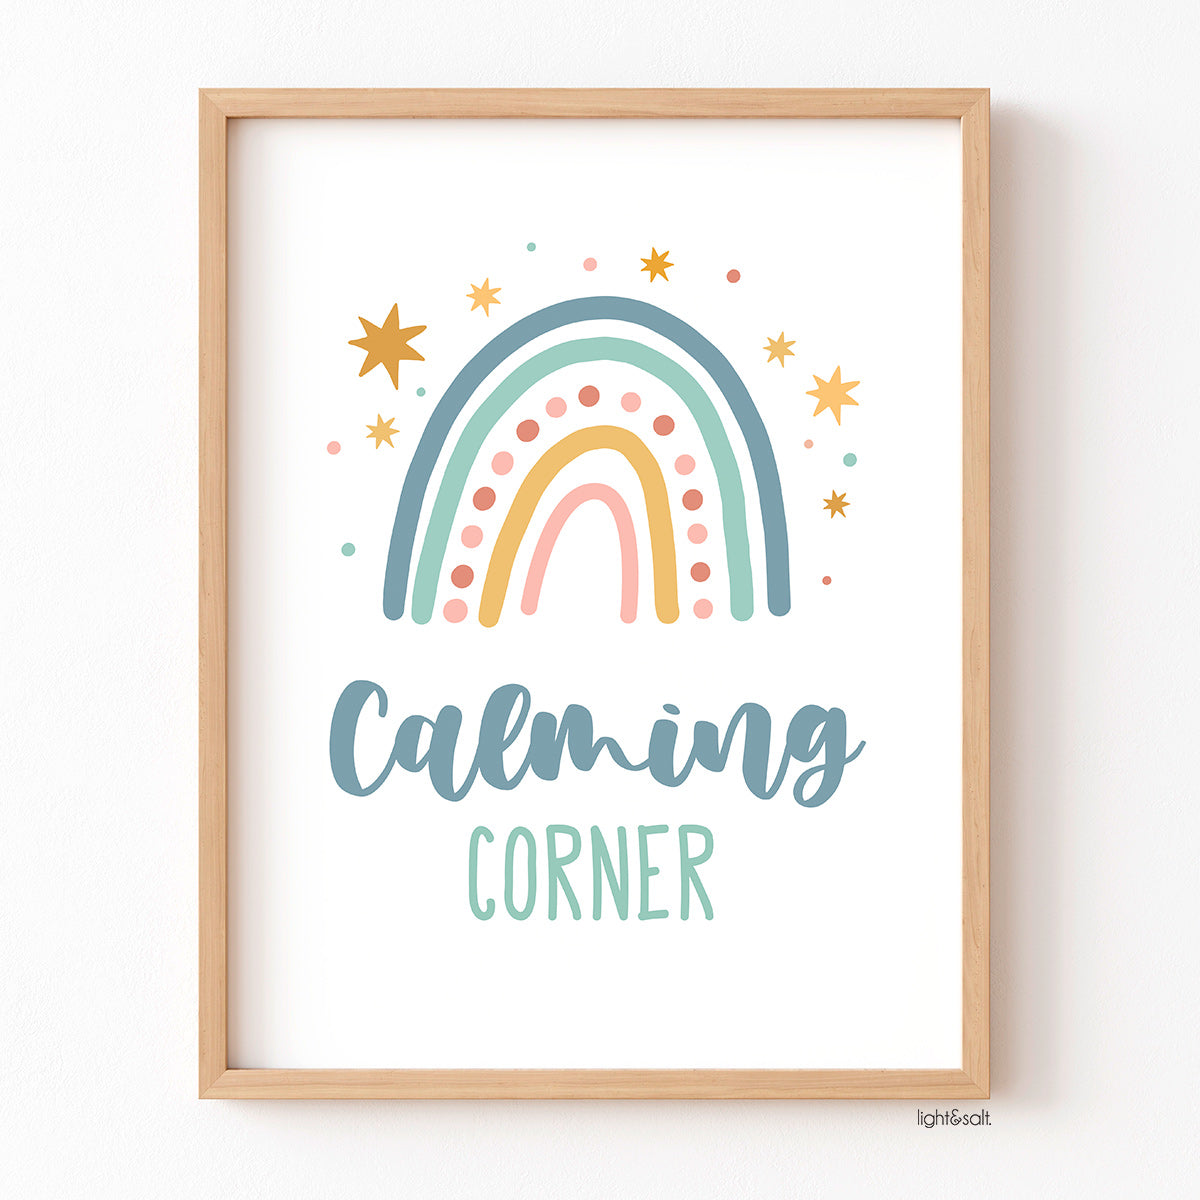 Calming corner poster